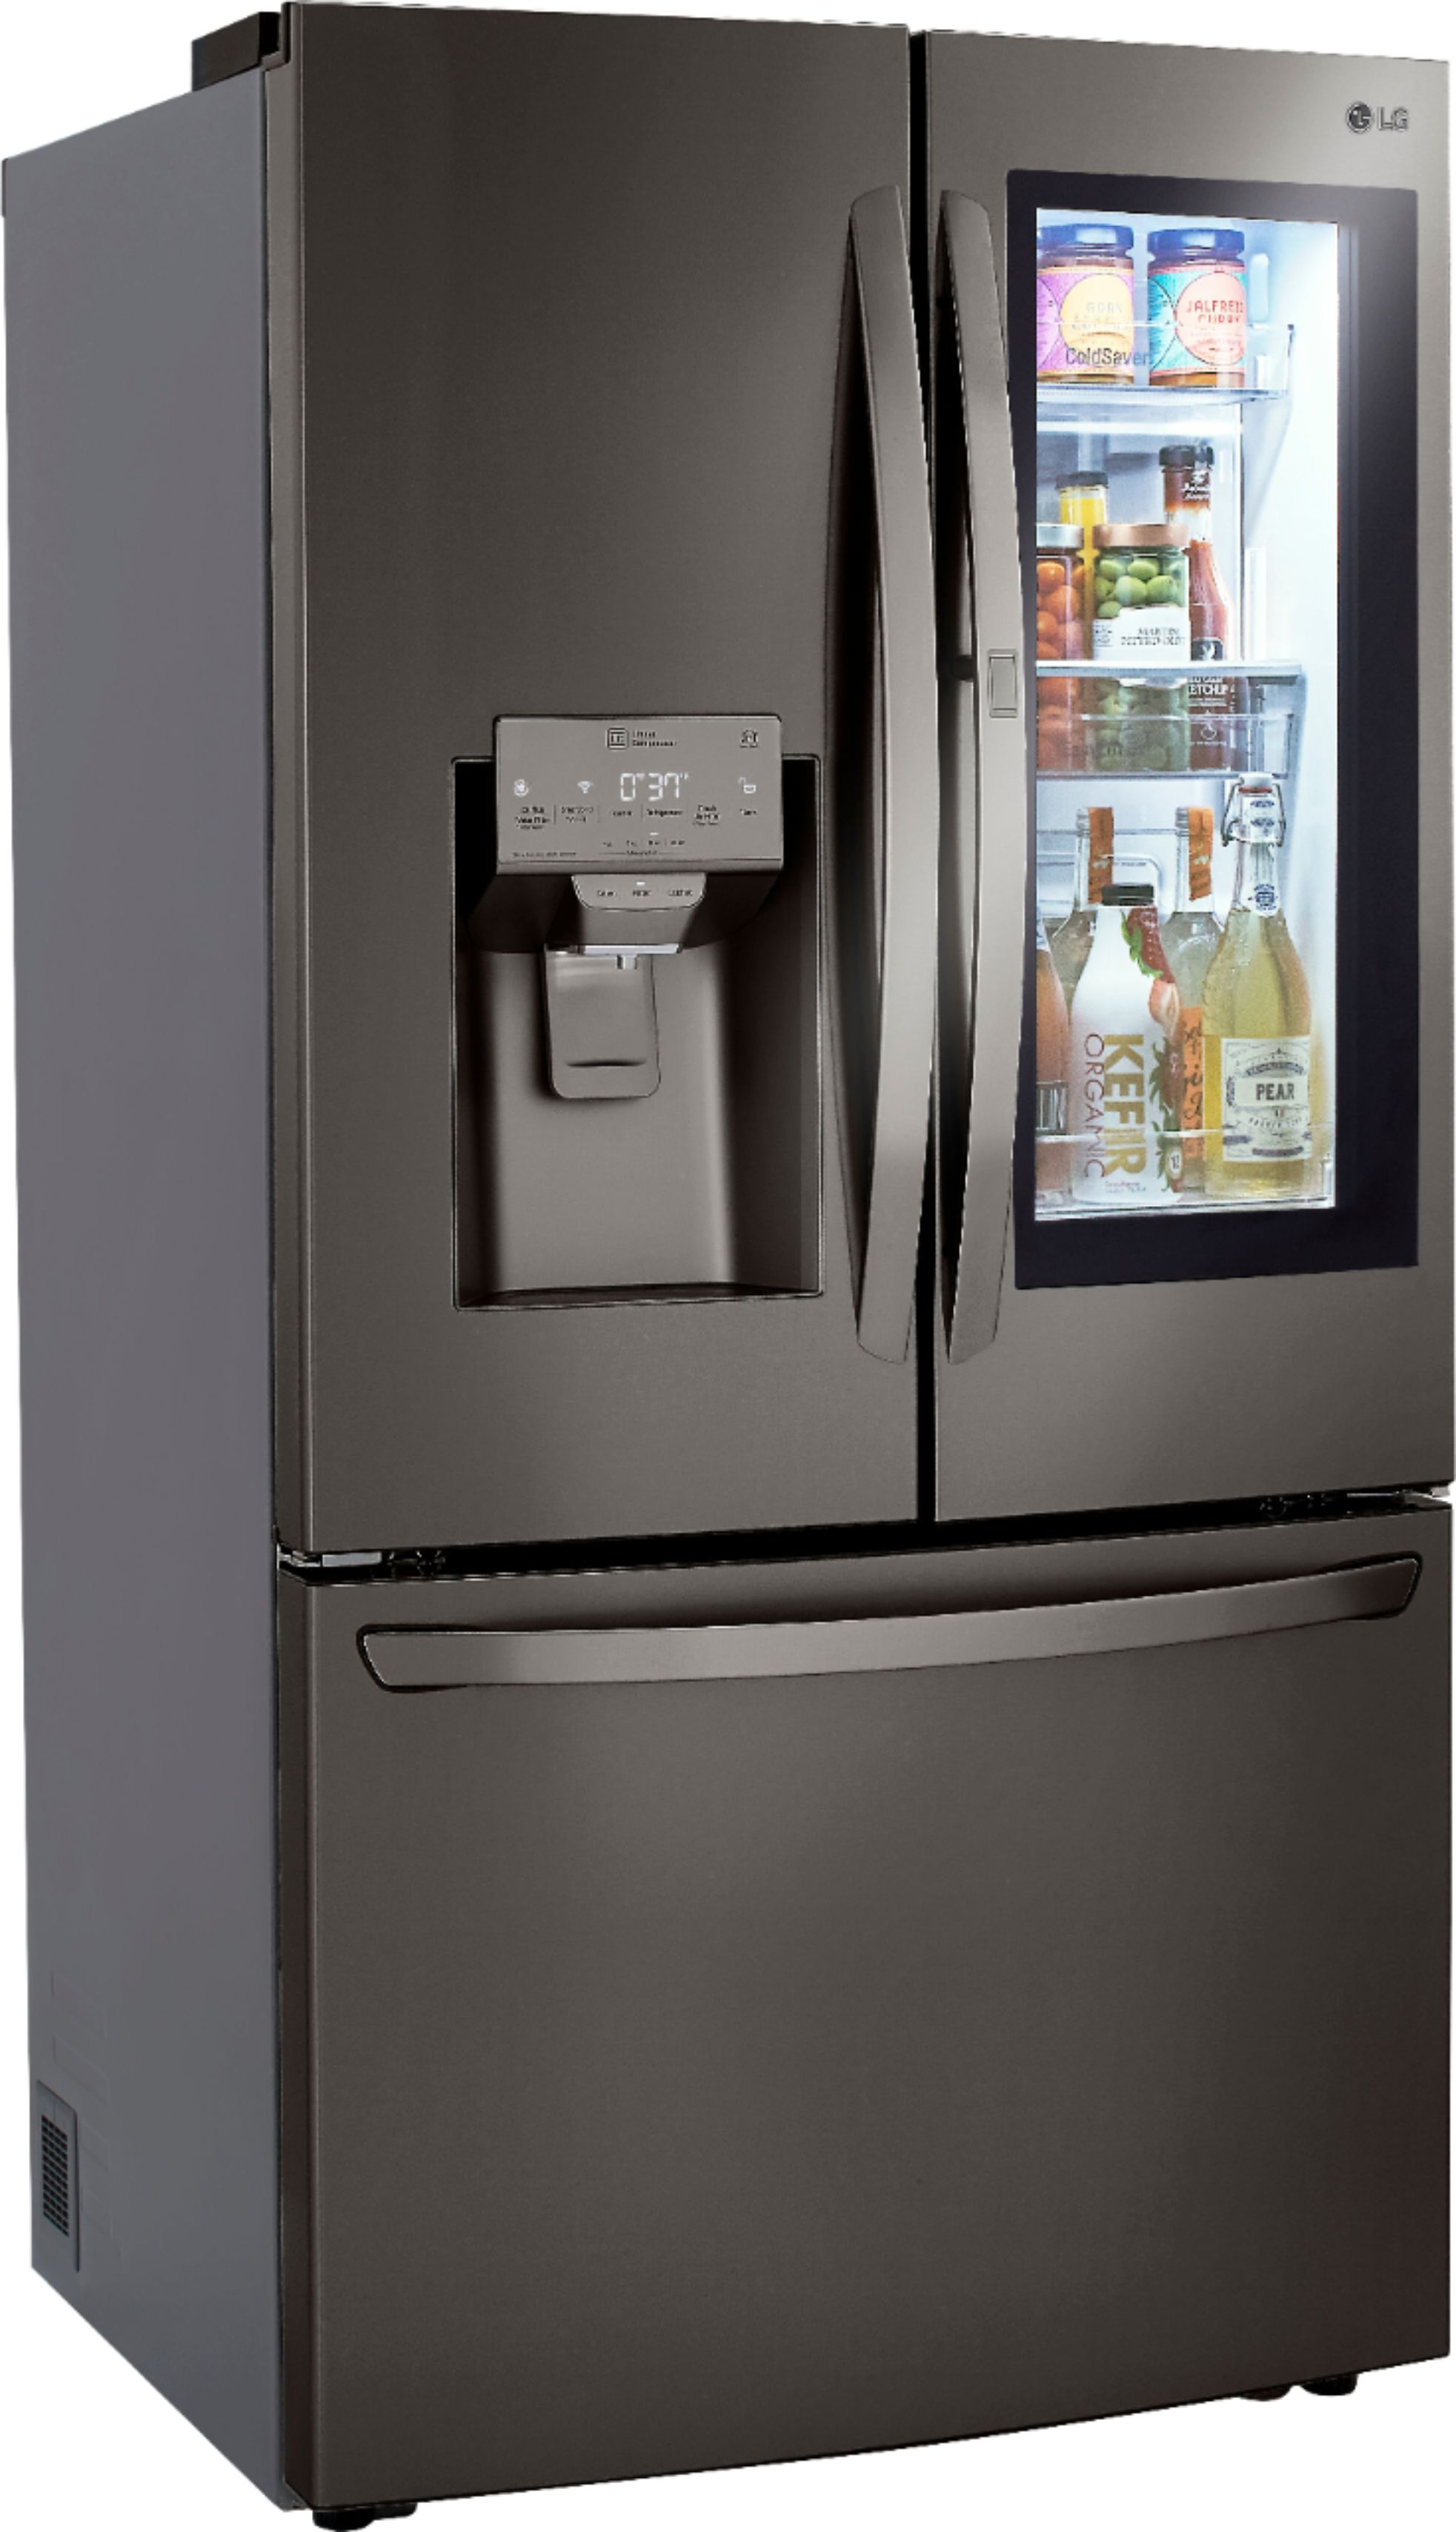 LG 23.5 Cu. Ft. French InstaView Door-in-Door Counter-Depth Lg Refrigerator Black Stainless Steel